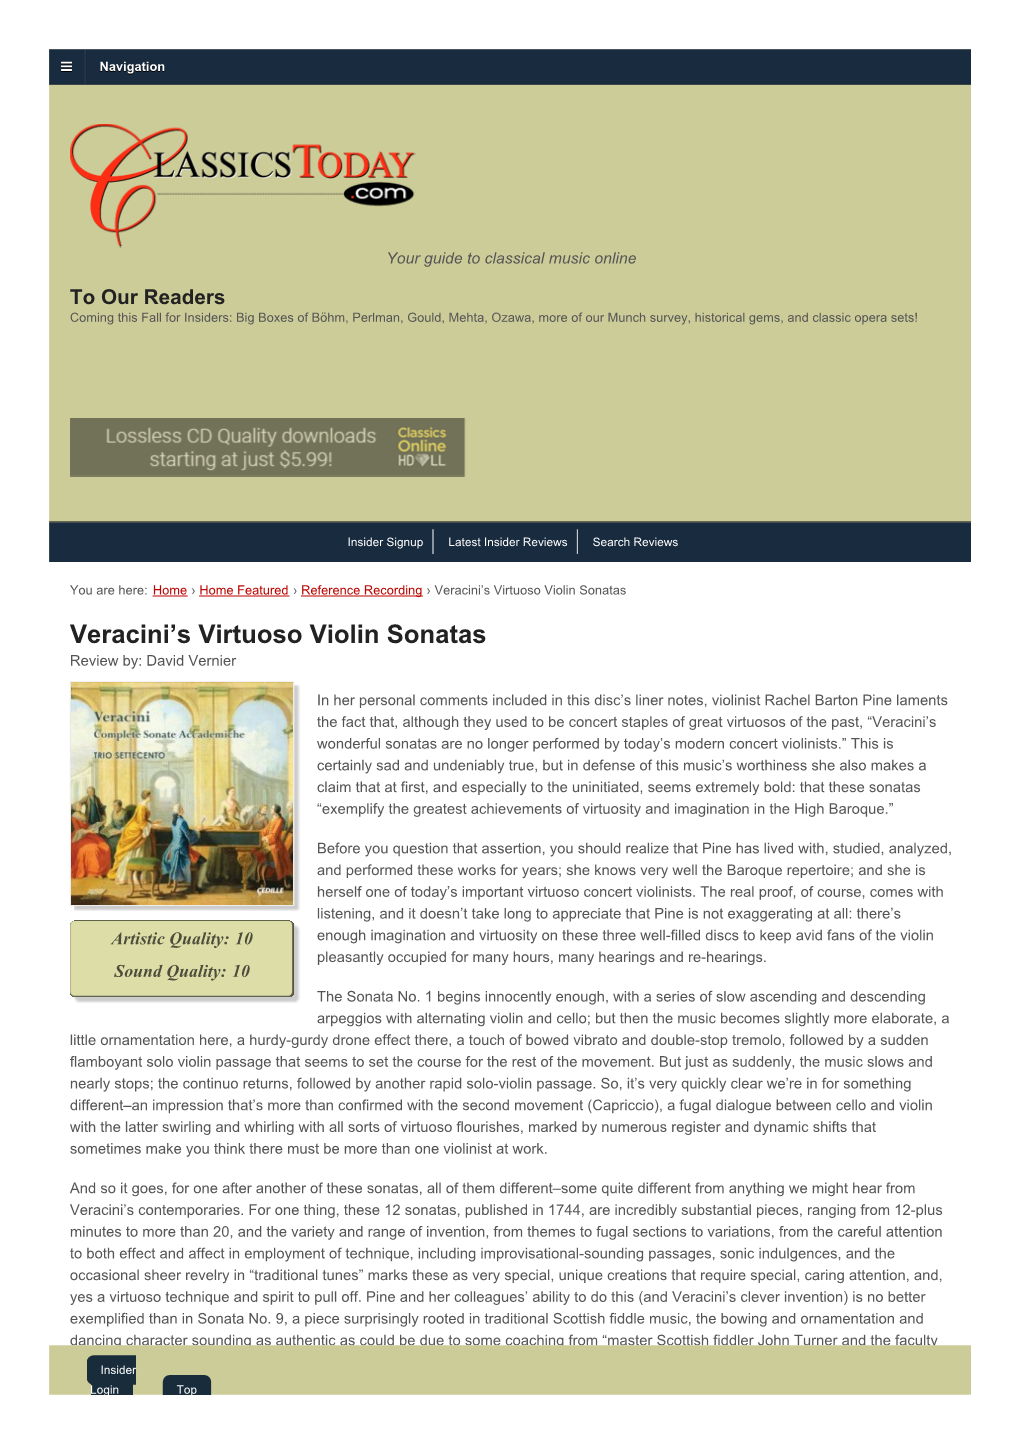 Veracini's Virtuoso Violin Sonatas